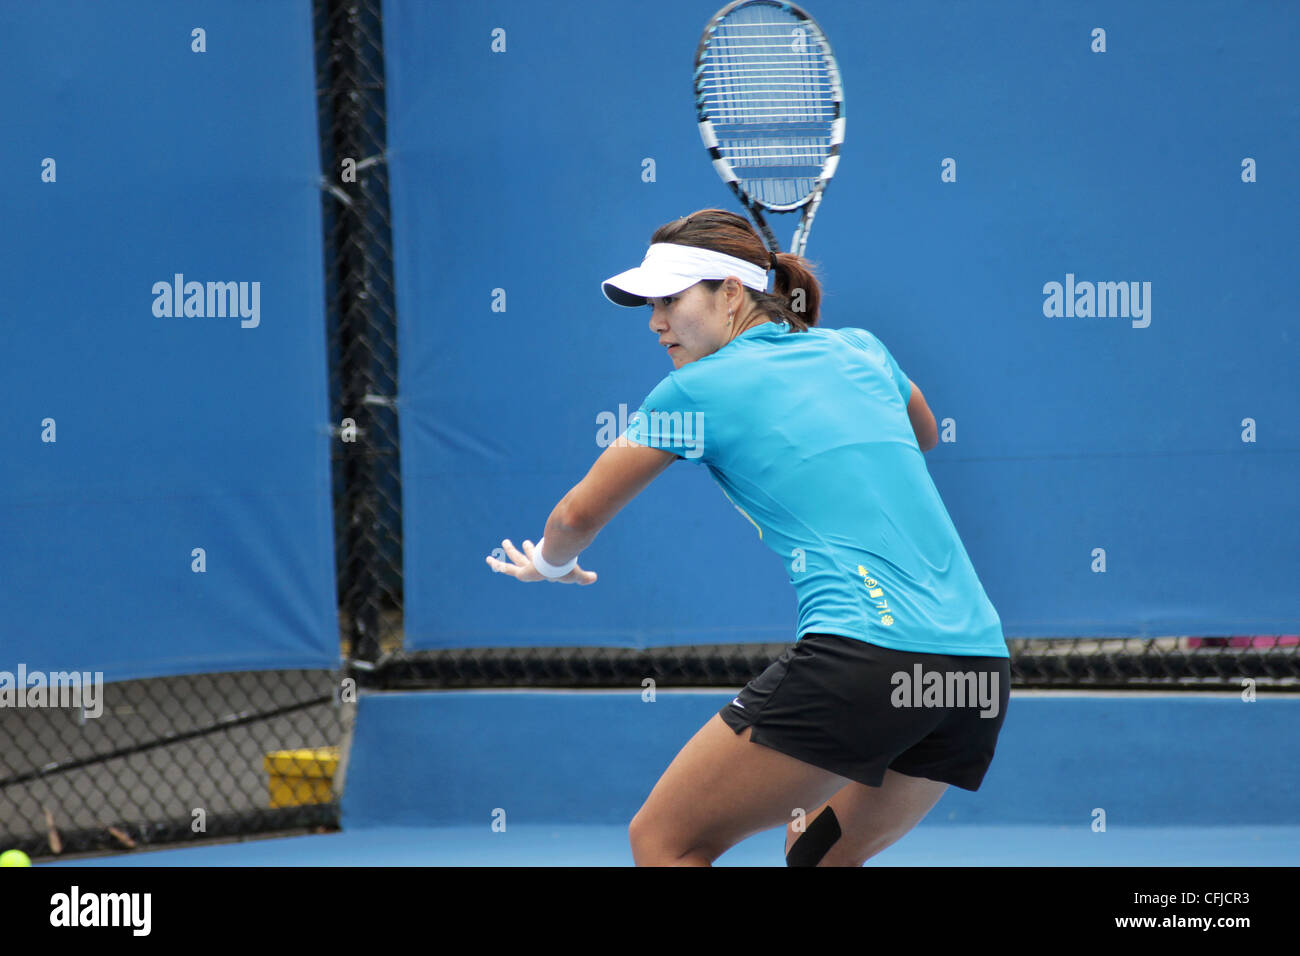 MELBOURNE, Australien - 21. Januar 2012: WTA-Nummer 4 Tennisspieler Li Na trifft auf einen Übungsplatz 21. Januar 2012. Stockfoto